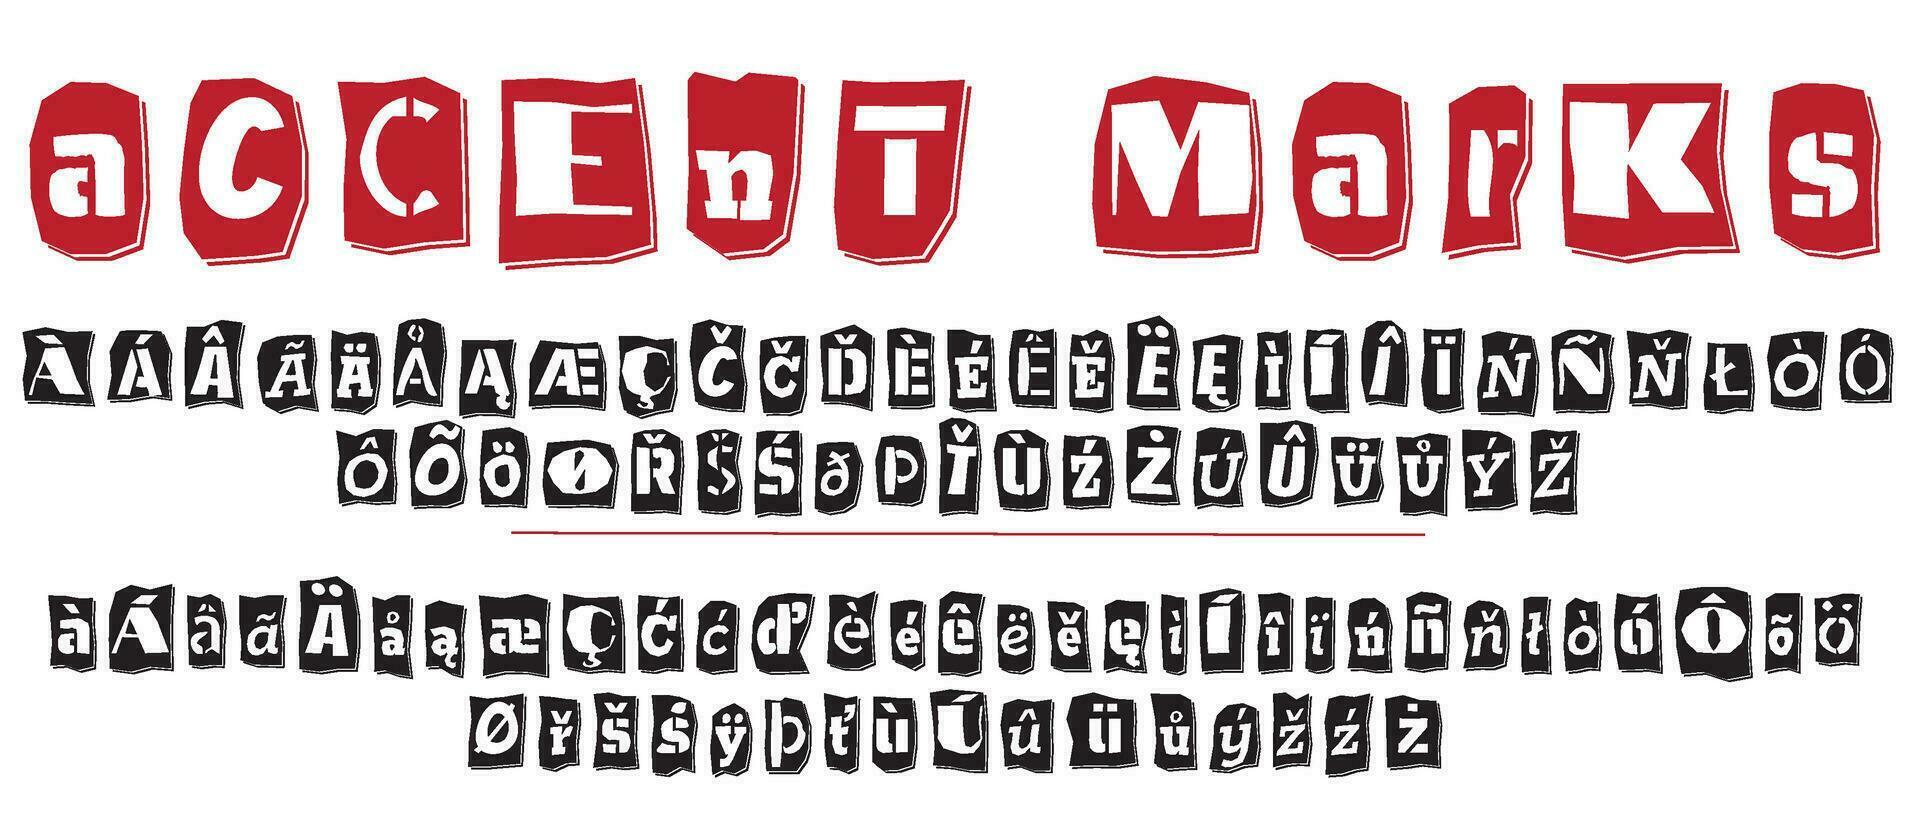 lösen collage stil stencil svart och röd brev tal och skiljetecken märken skära från tidningar och tidningar. årgång ABC samling. svart och vit alfabet typografi vektor illustration.